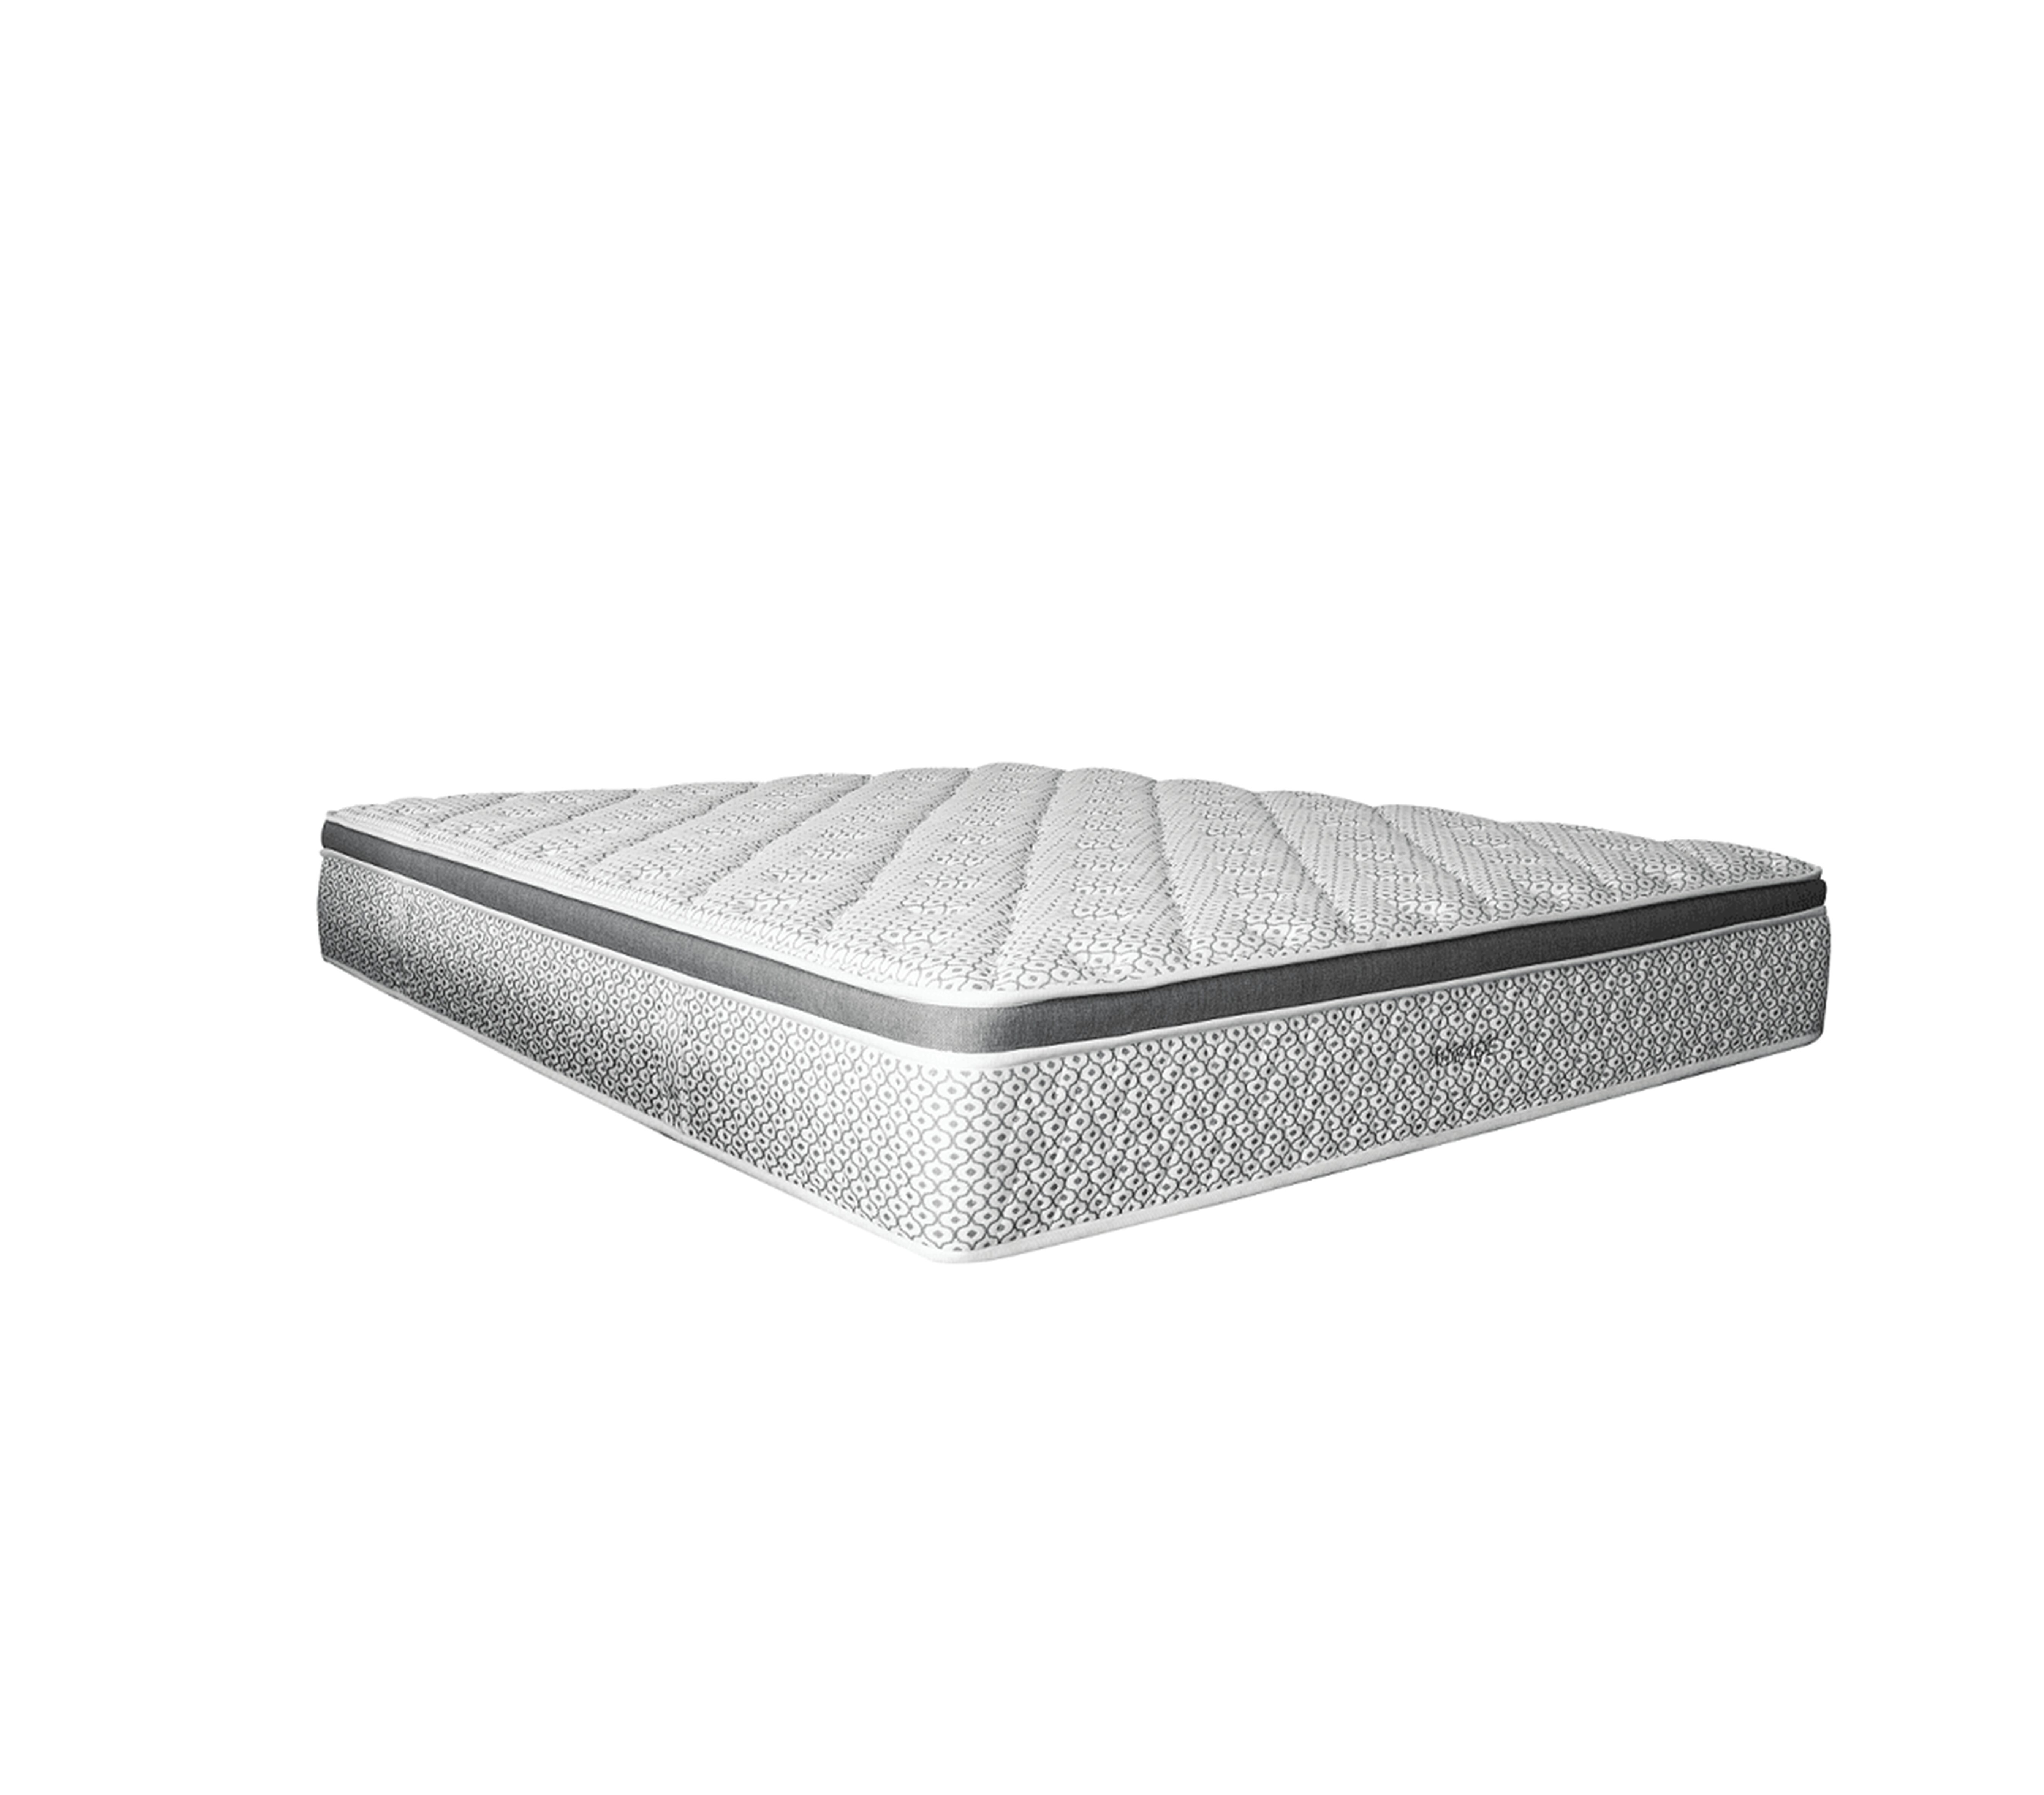 Mirage mattress